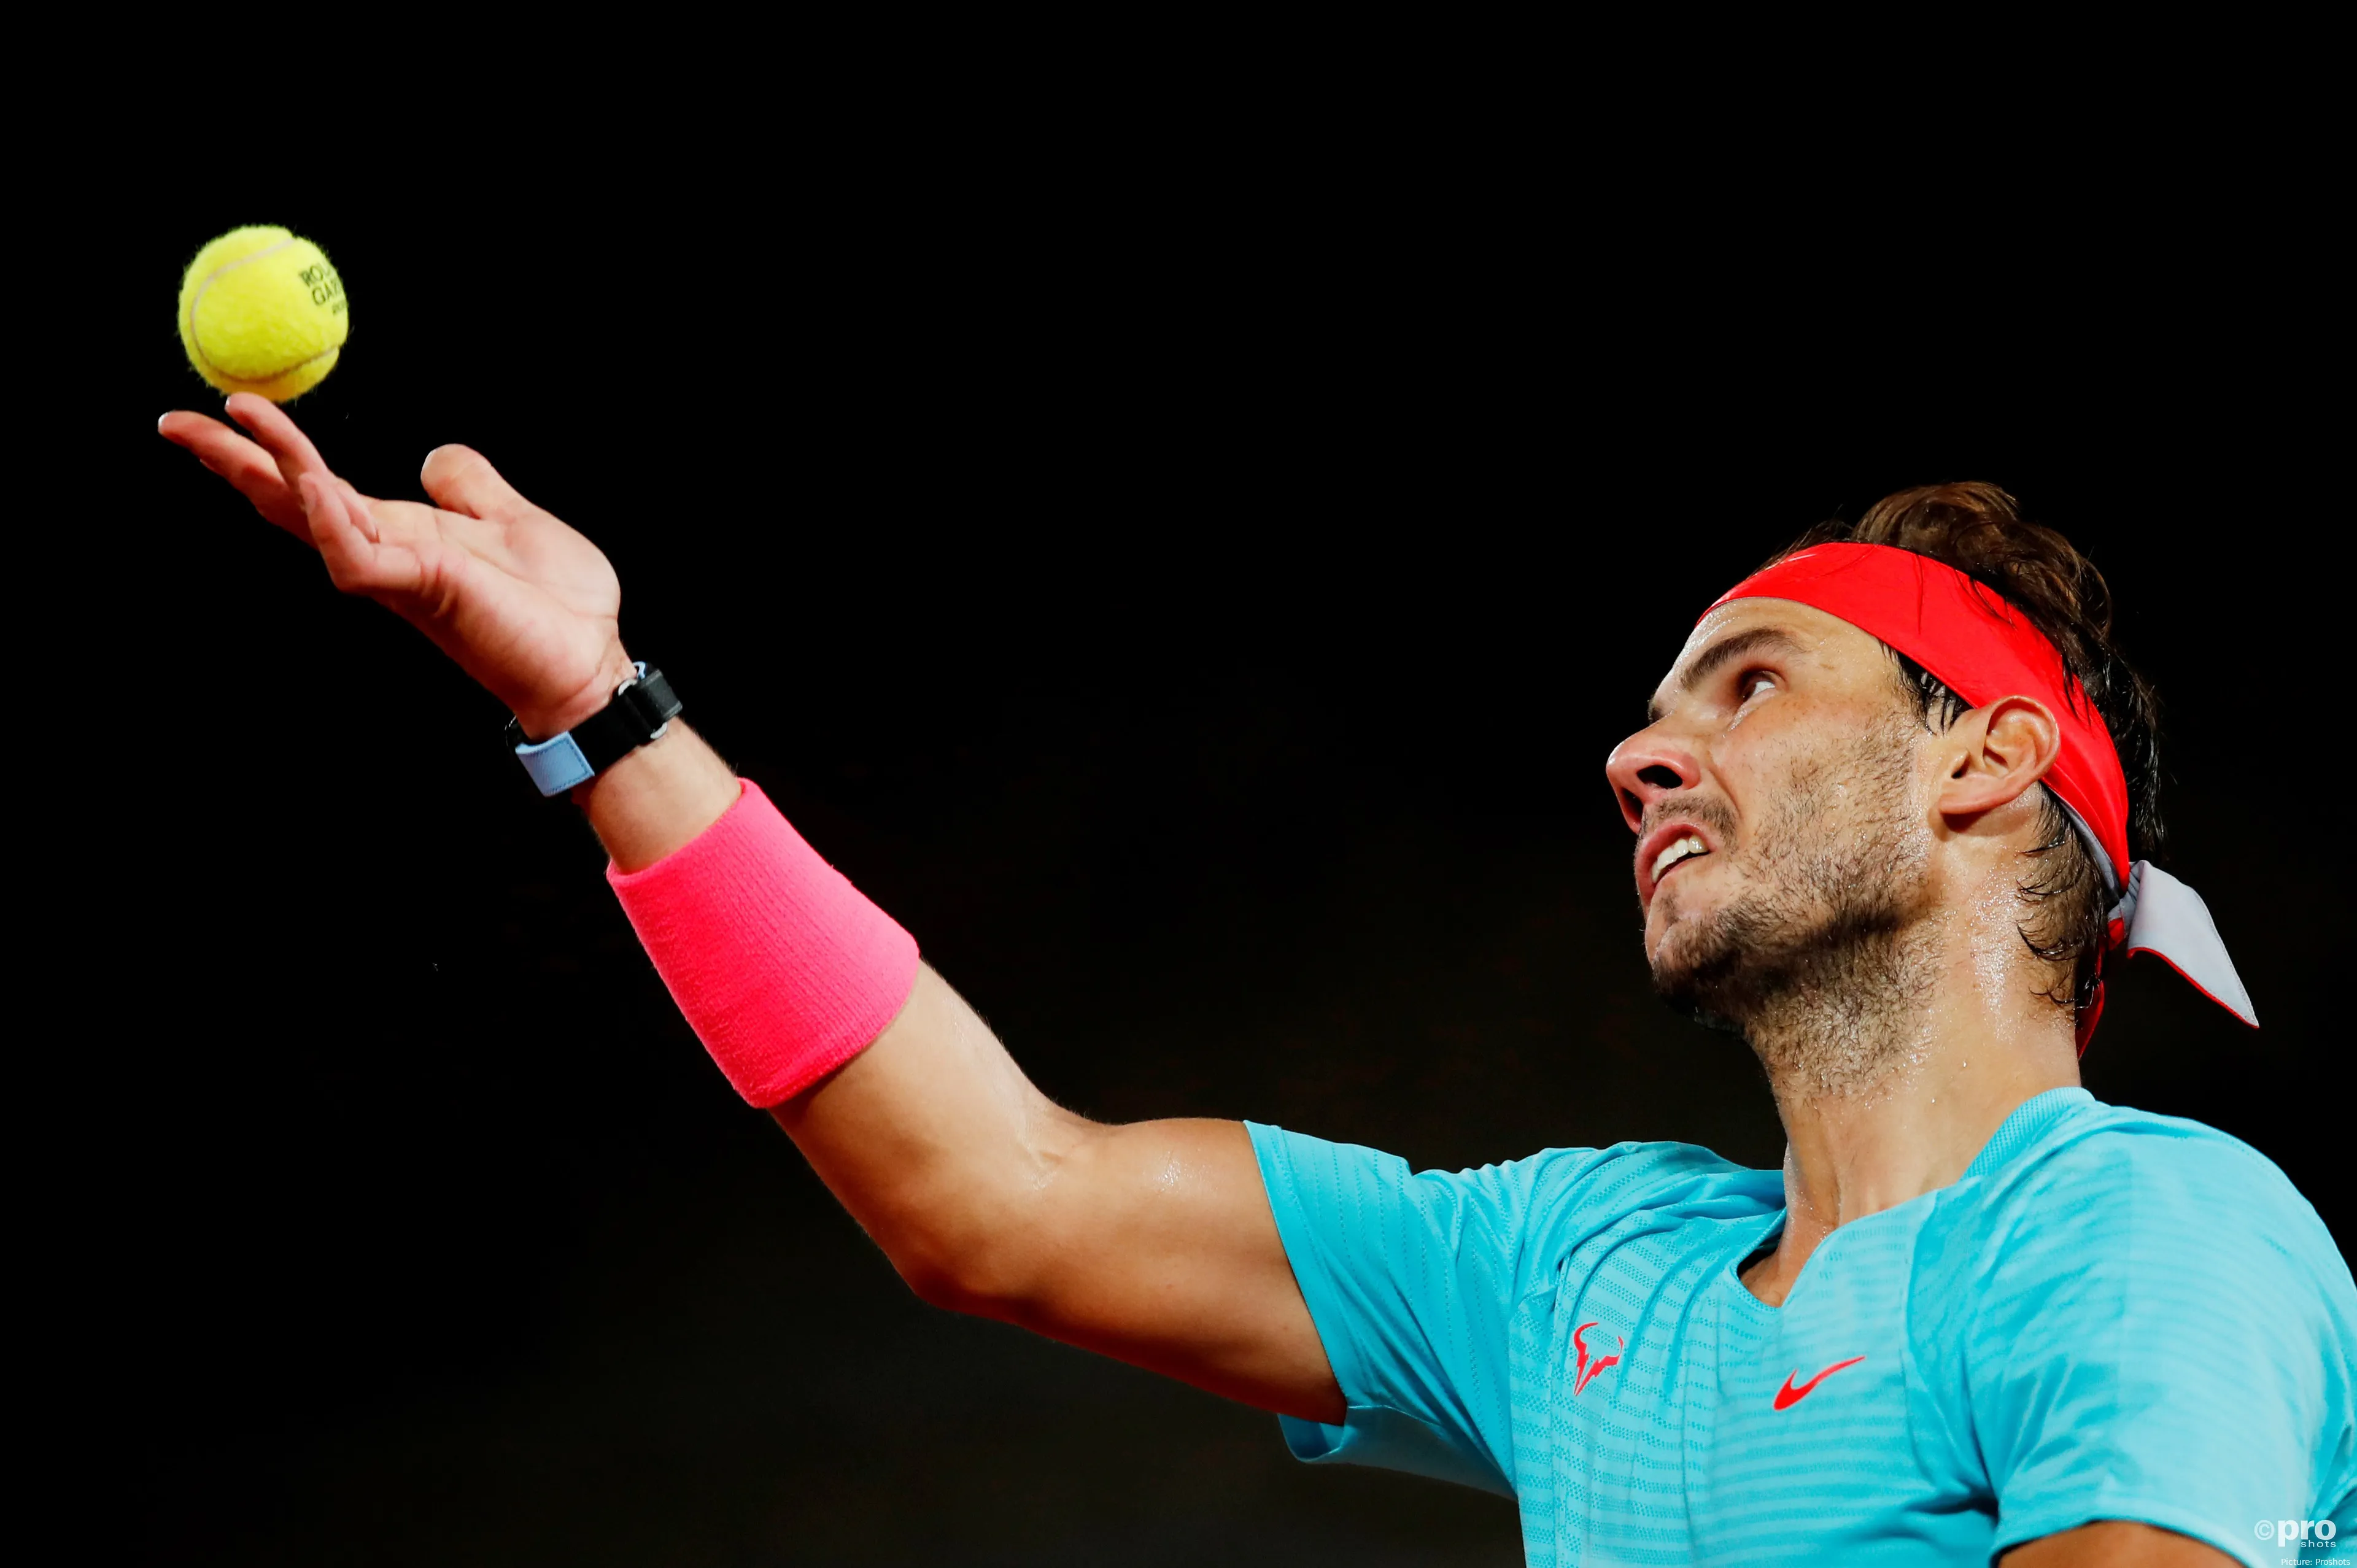 Rafael Nadal Roland Garros 2020 3 5f7d8bafc532d